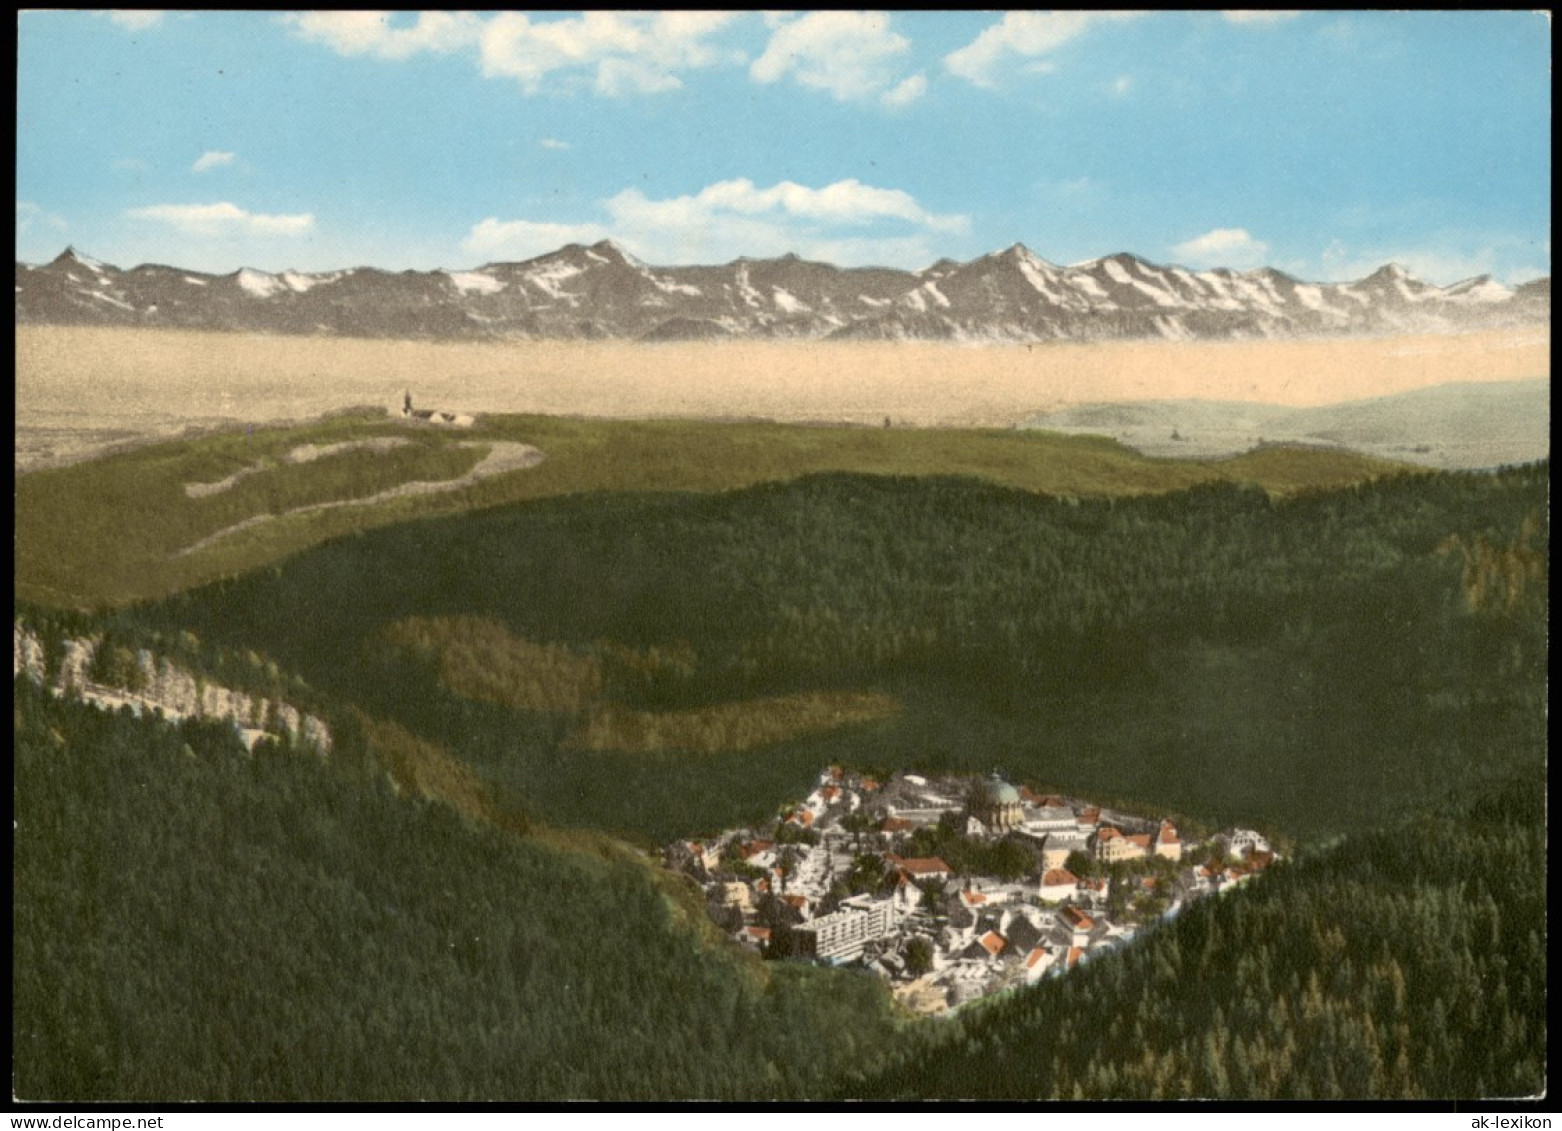 St. Blasien Hochschwarzwald Auf Höchenschwand Panorama-Ansicht 1960 - St. Blasien